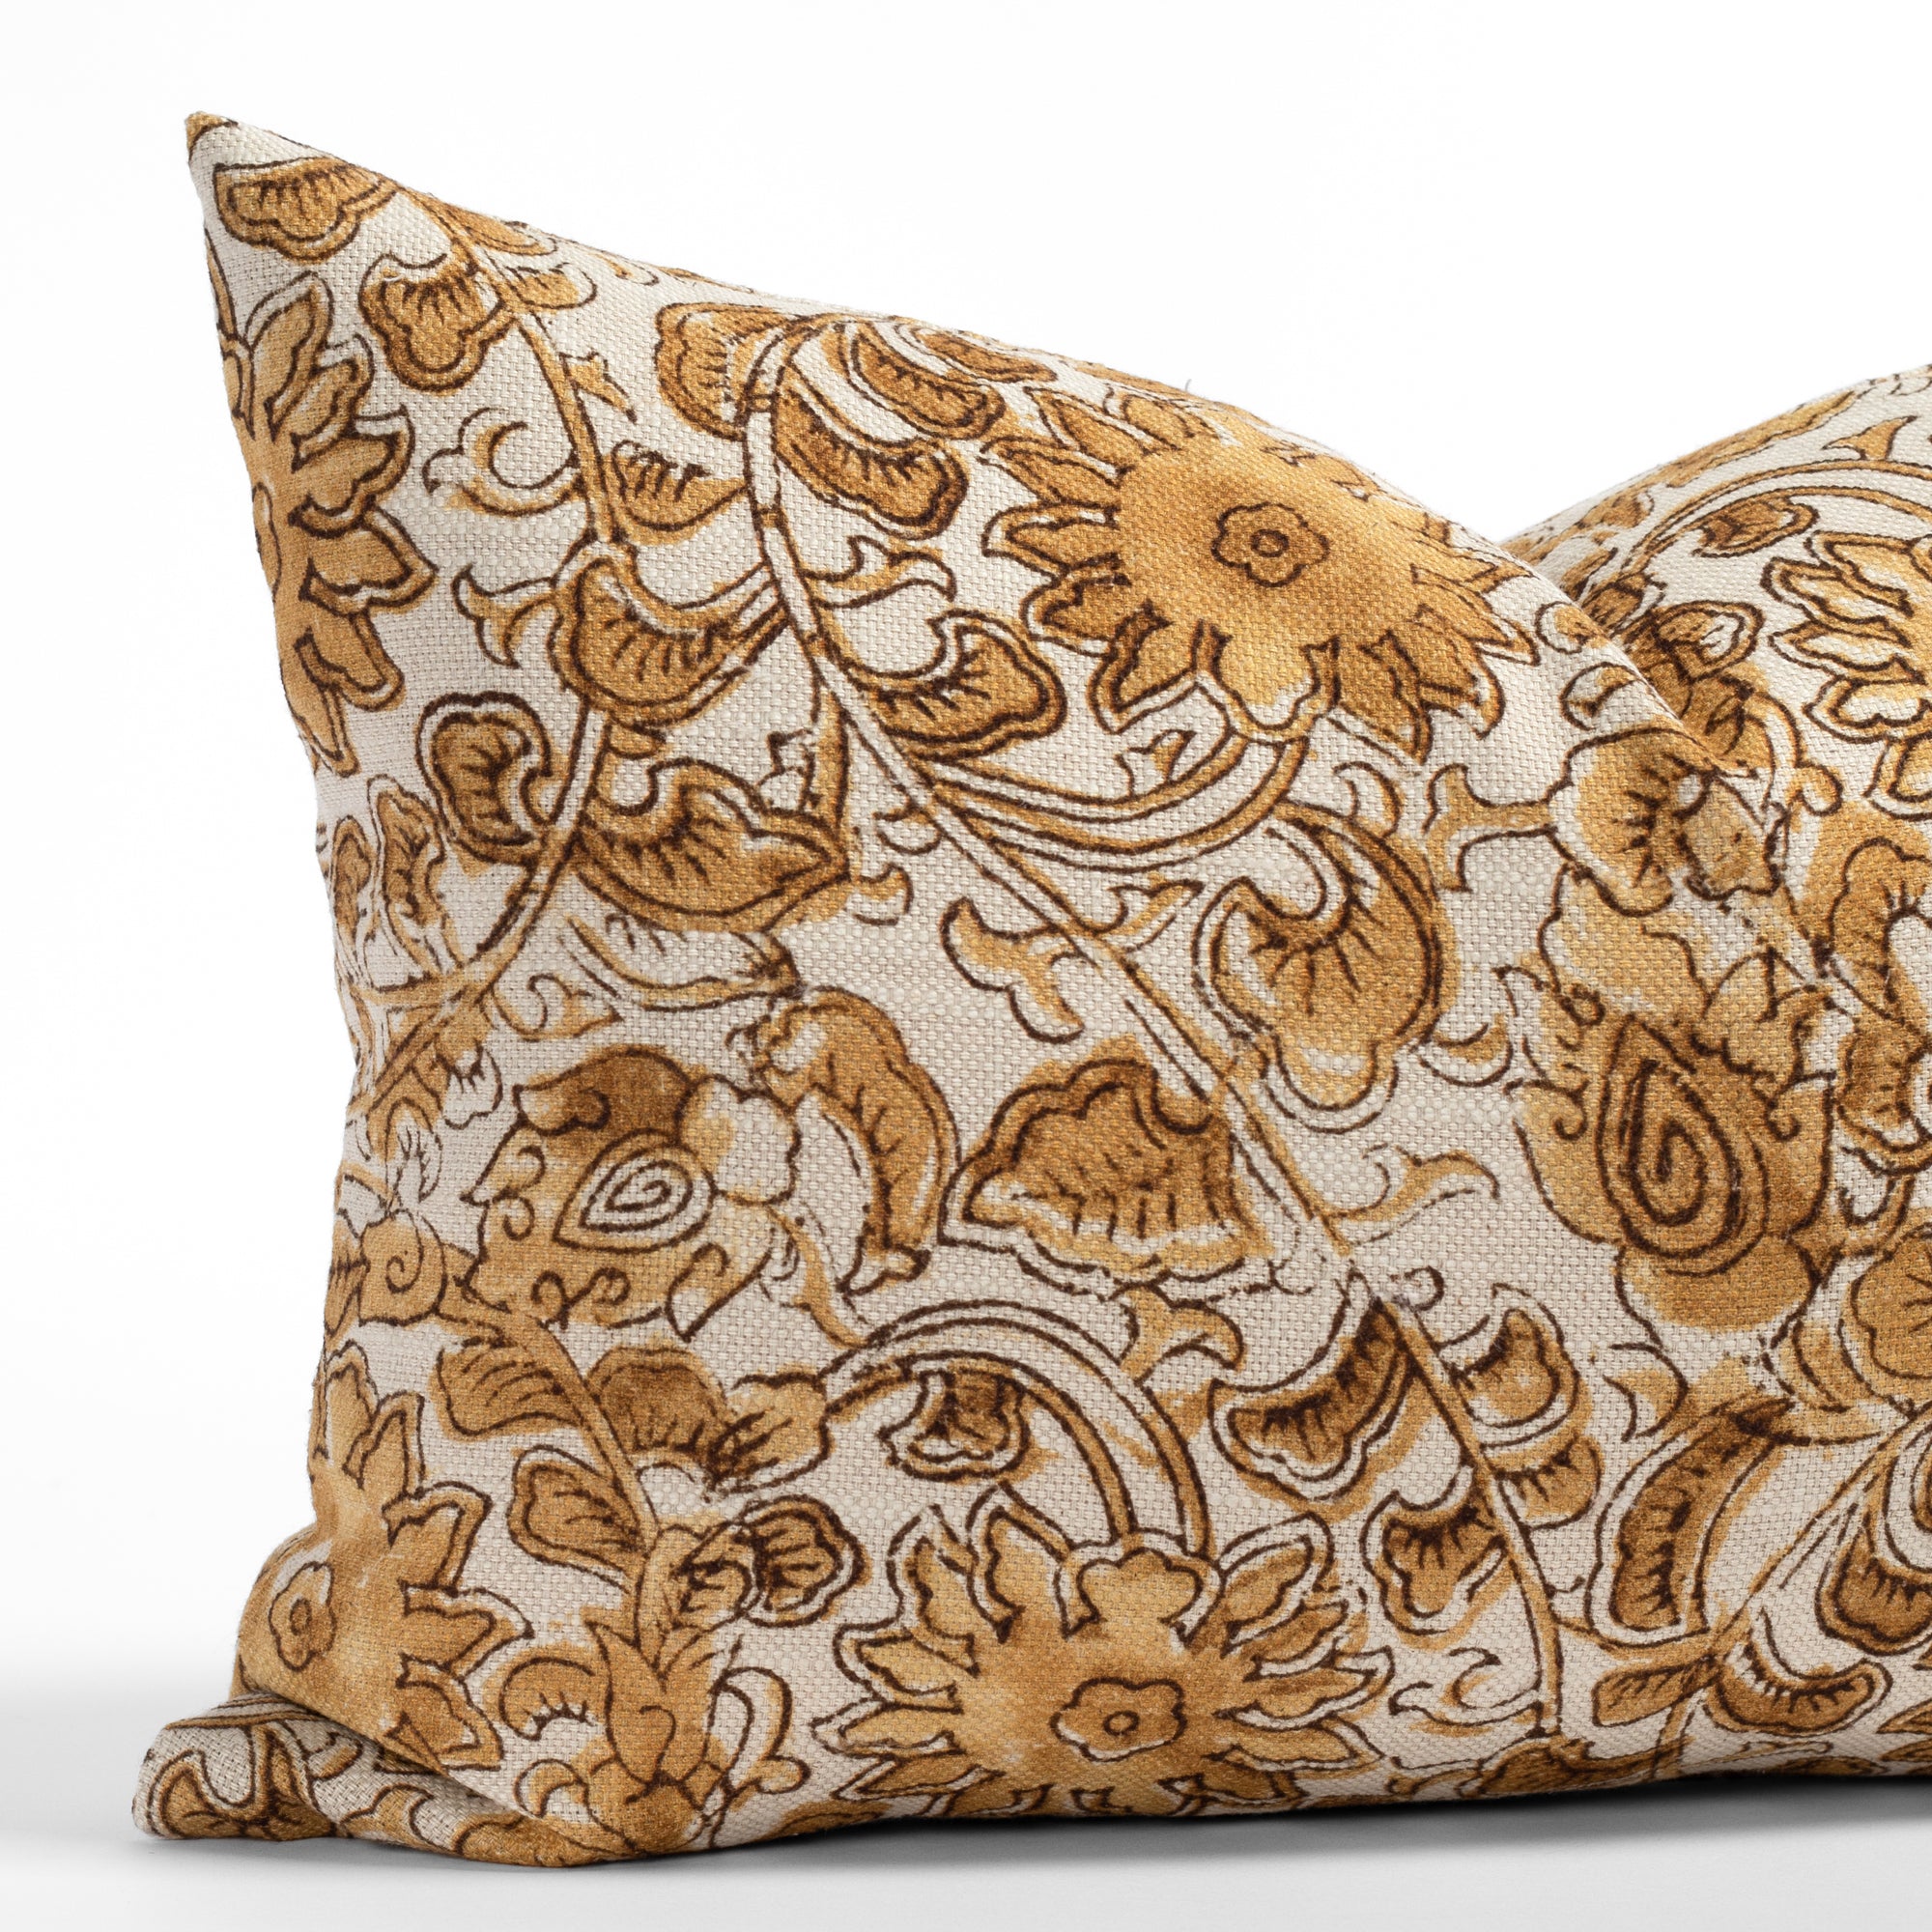 Tonic Living Pillows - Throw Pillows, Decorative Pillows, Lumbar Pillows